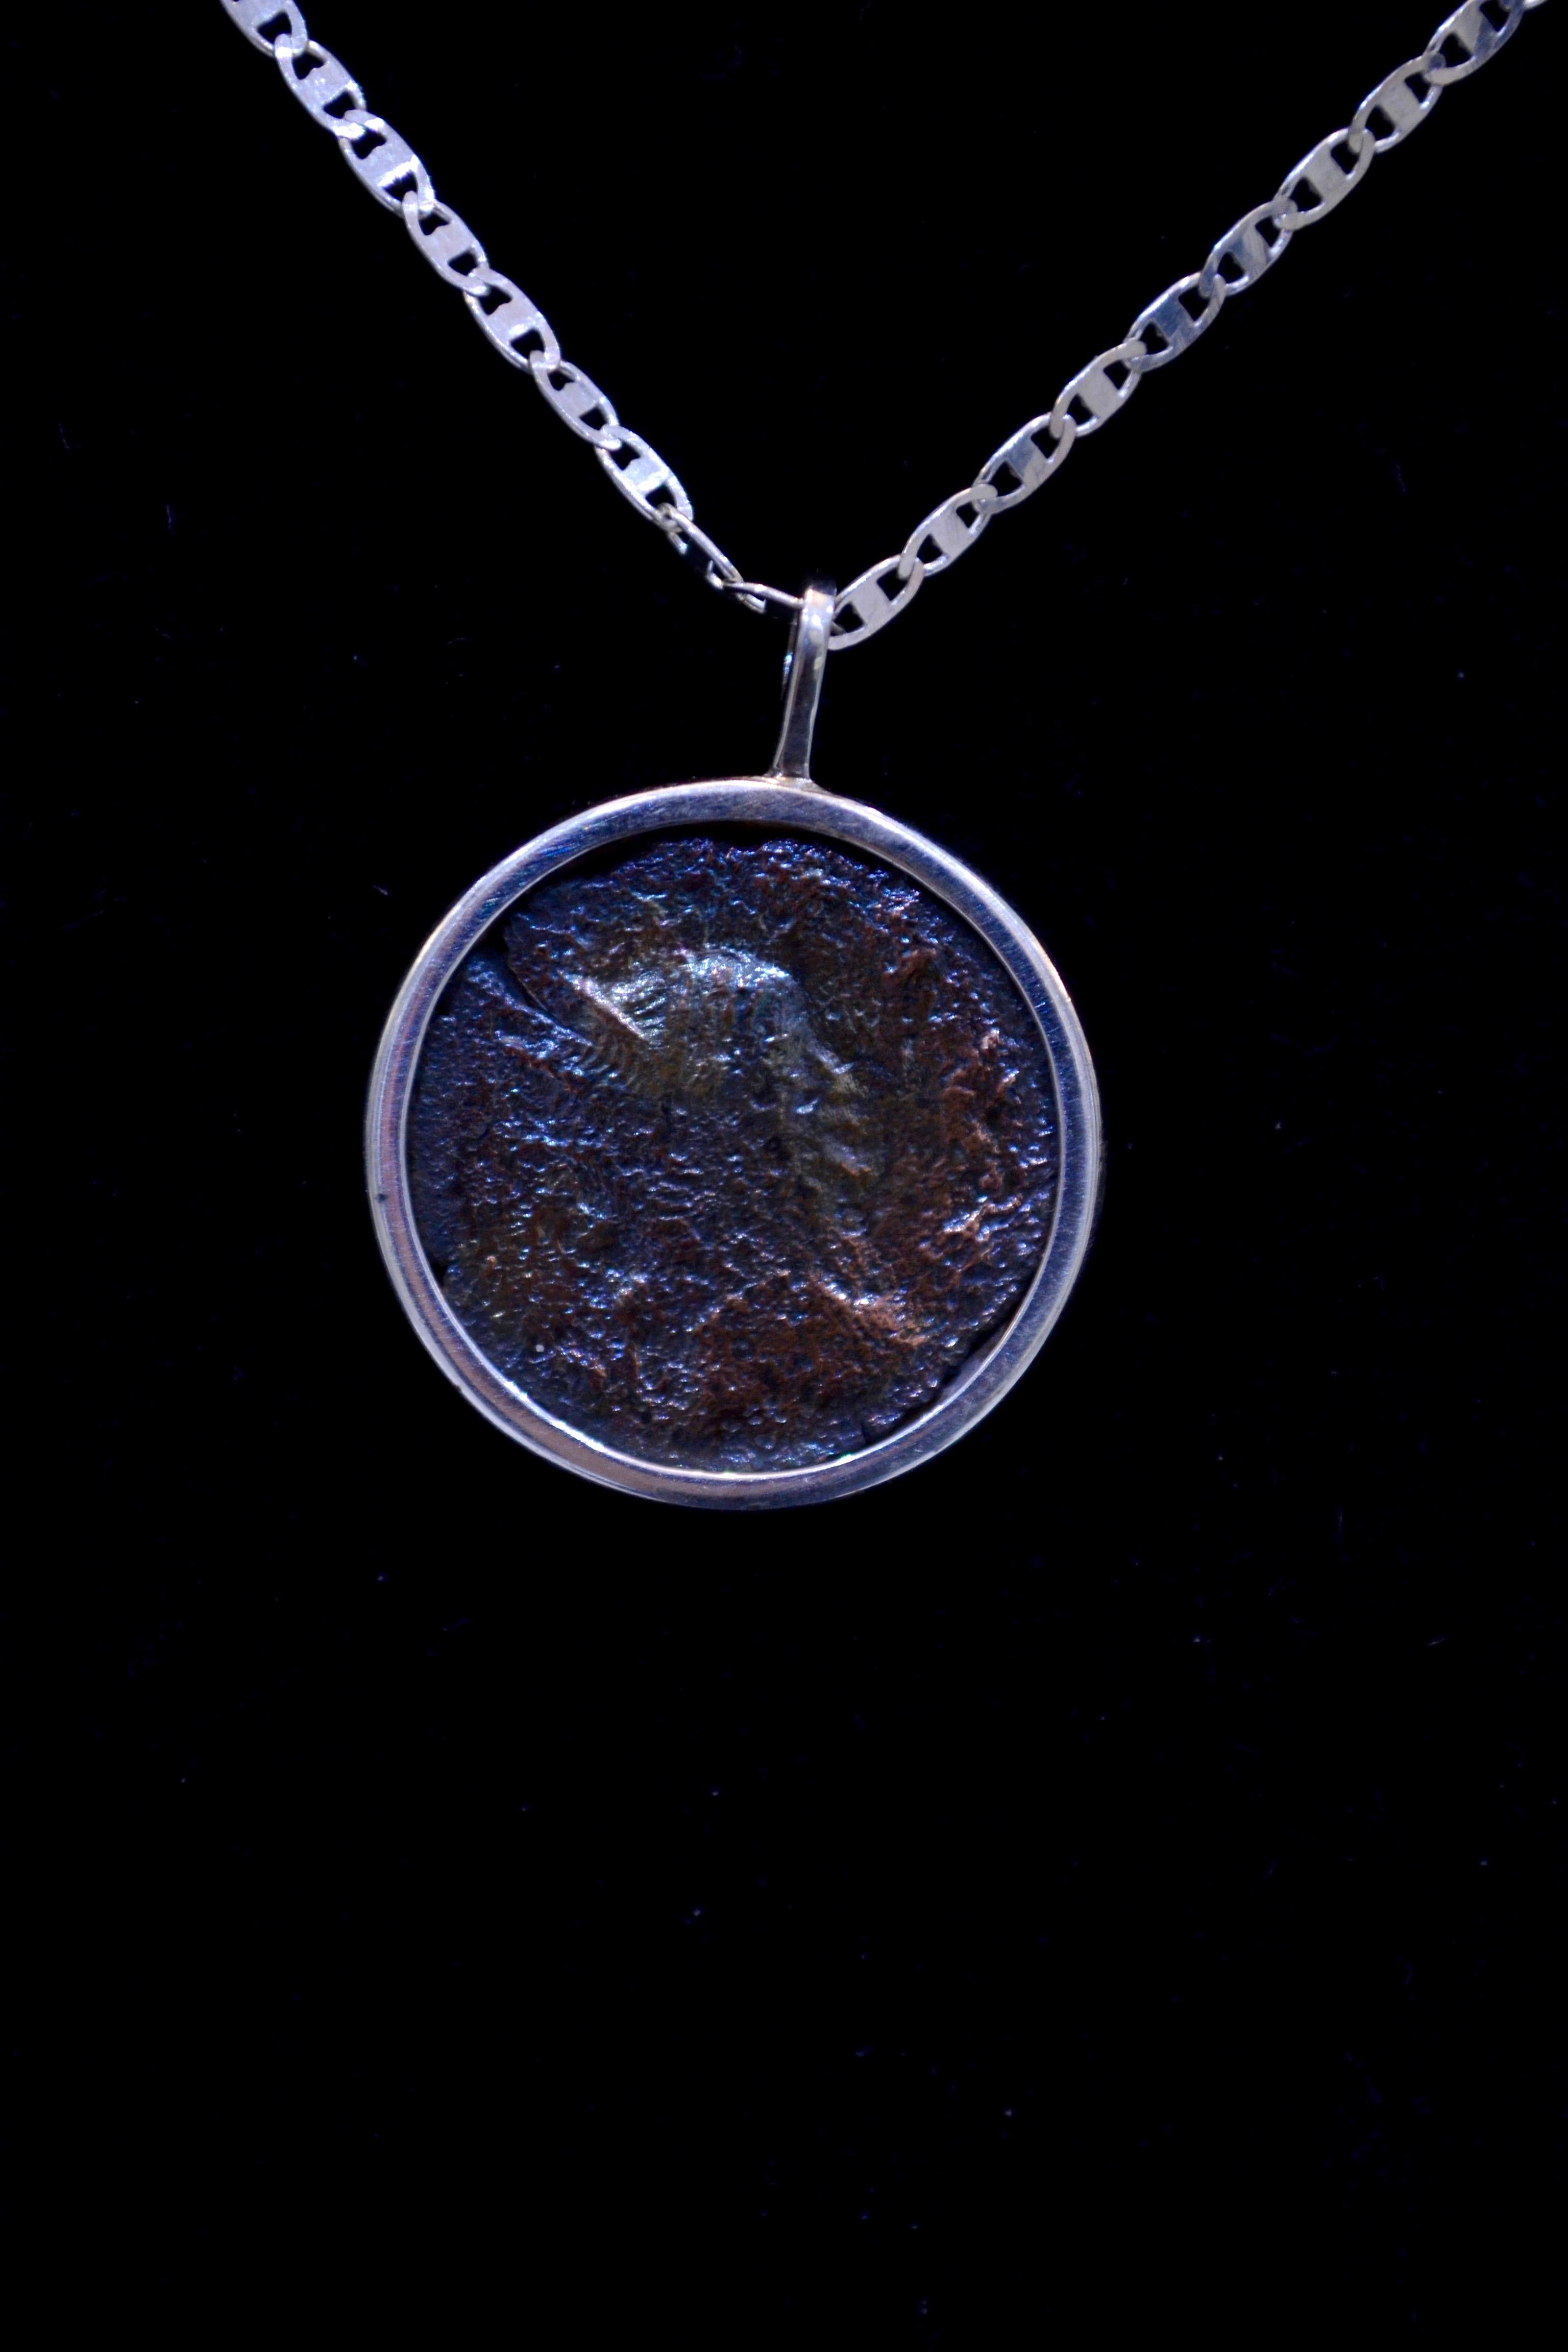 Authentique pièce de monnaie romaine en bronze Ca. 27 BC - 476 AD montée sur un collier contemporain en argent. Prêt à être porté !

Pièce de bronze du grand Empire romain datant de près de 2 000 ans. Belle iridescence.